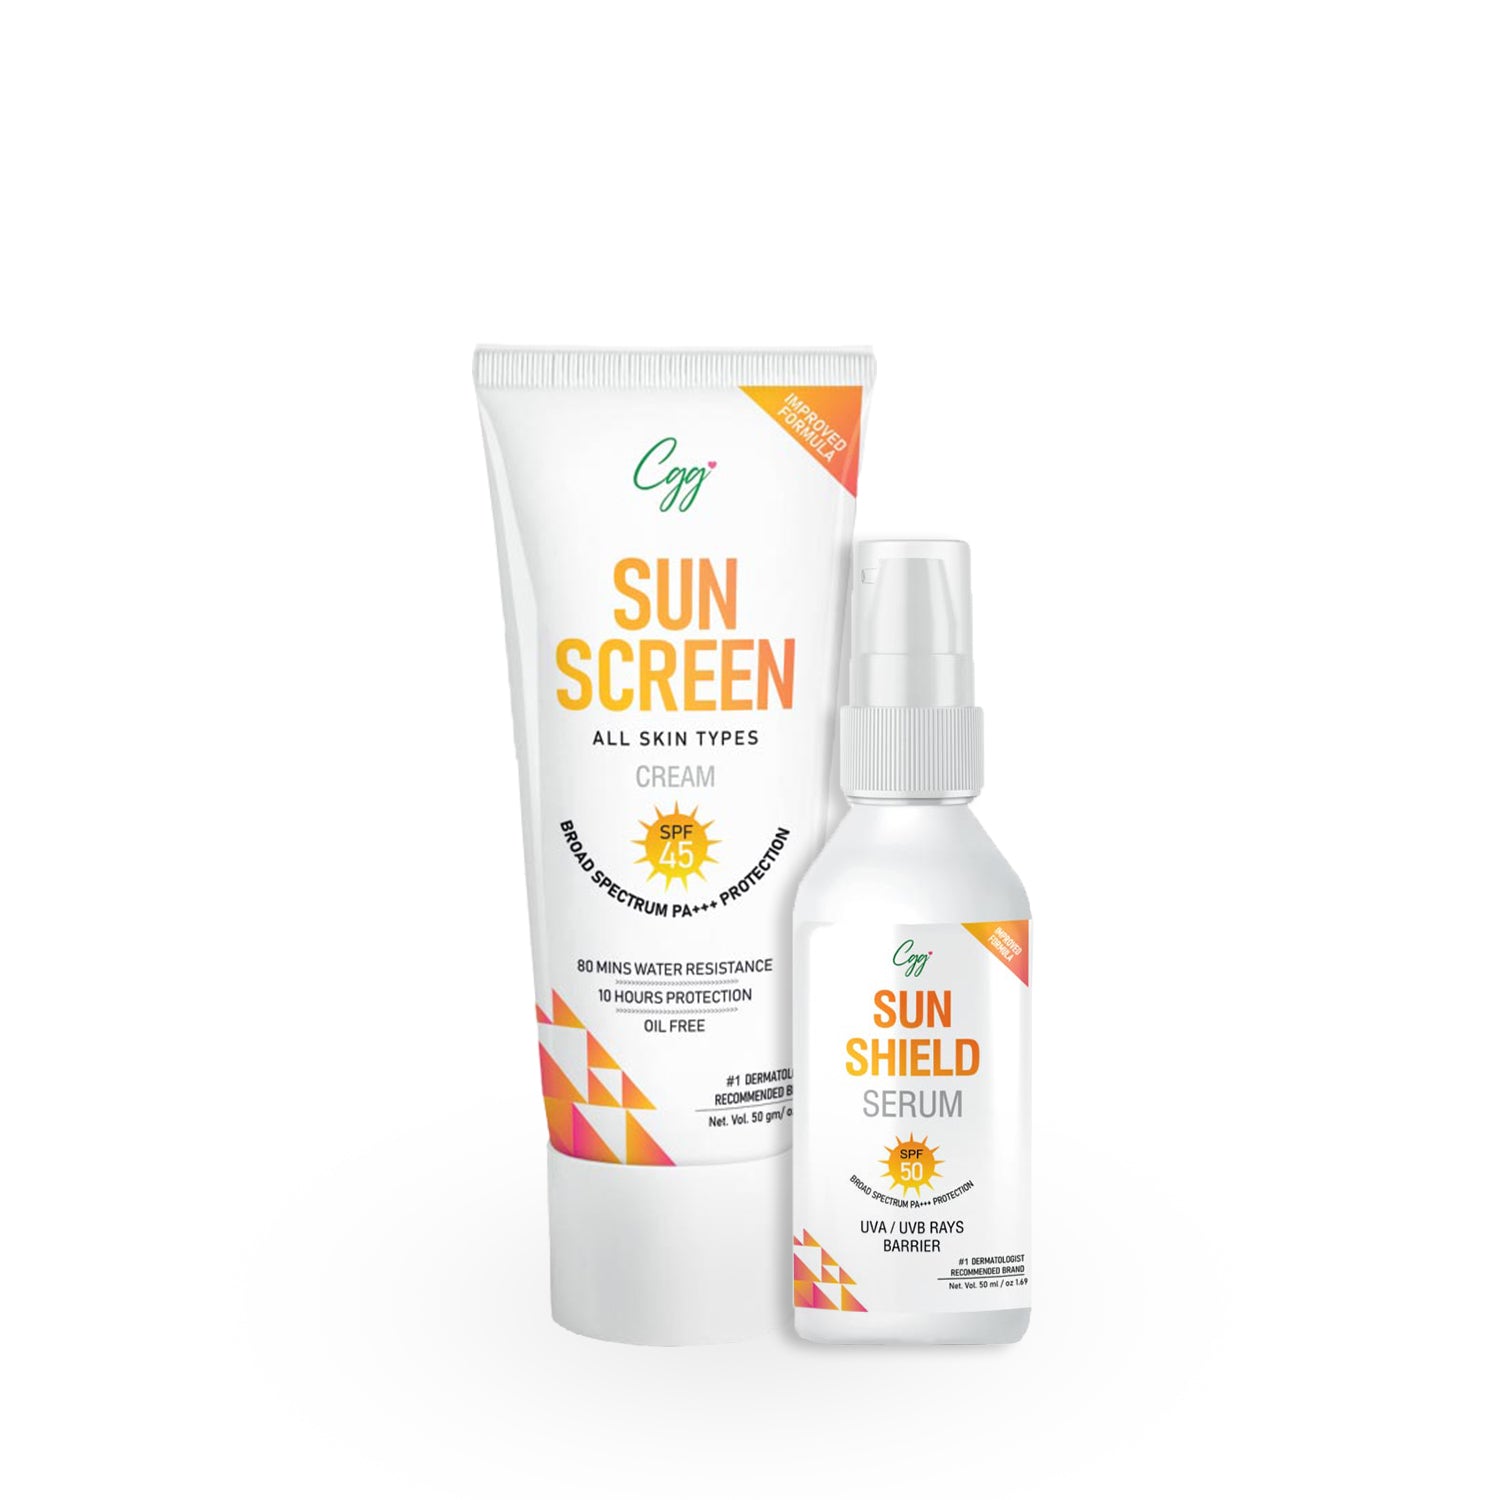 CGG Cosmetics Sunscreen Sun Block Kit | Sunscreen Cream | Sun Shiled Serum